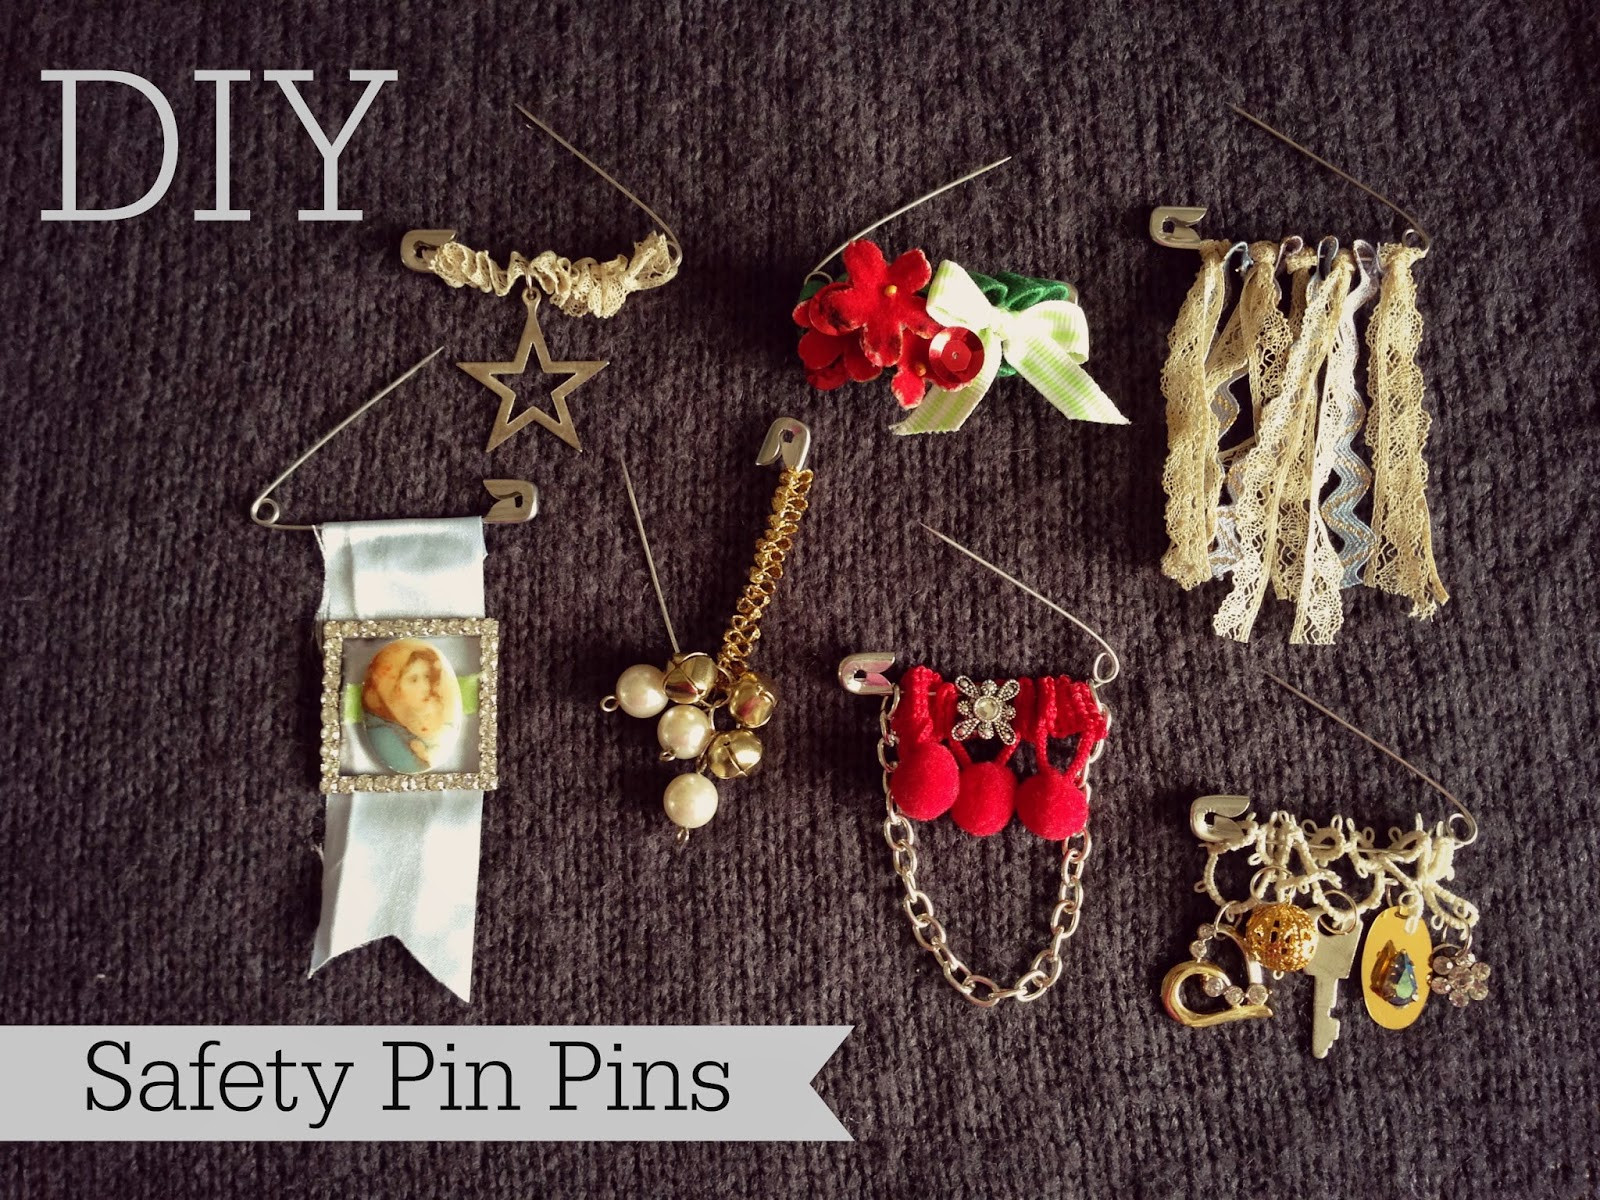 Pins Diy
 WhiMSy love DIY Safety Pin Pins